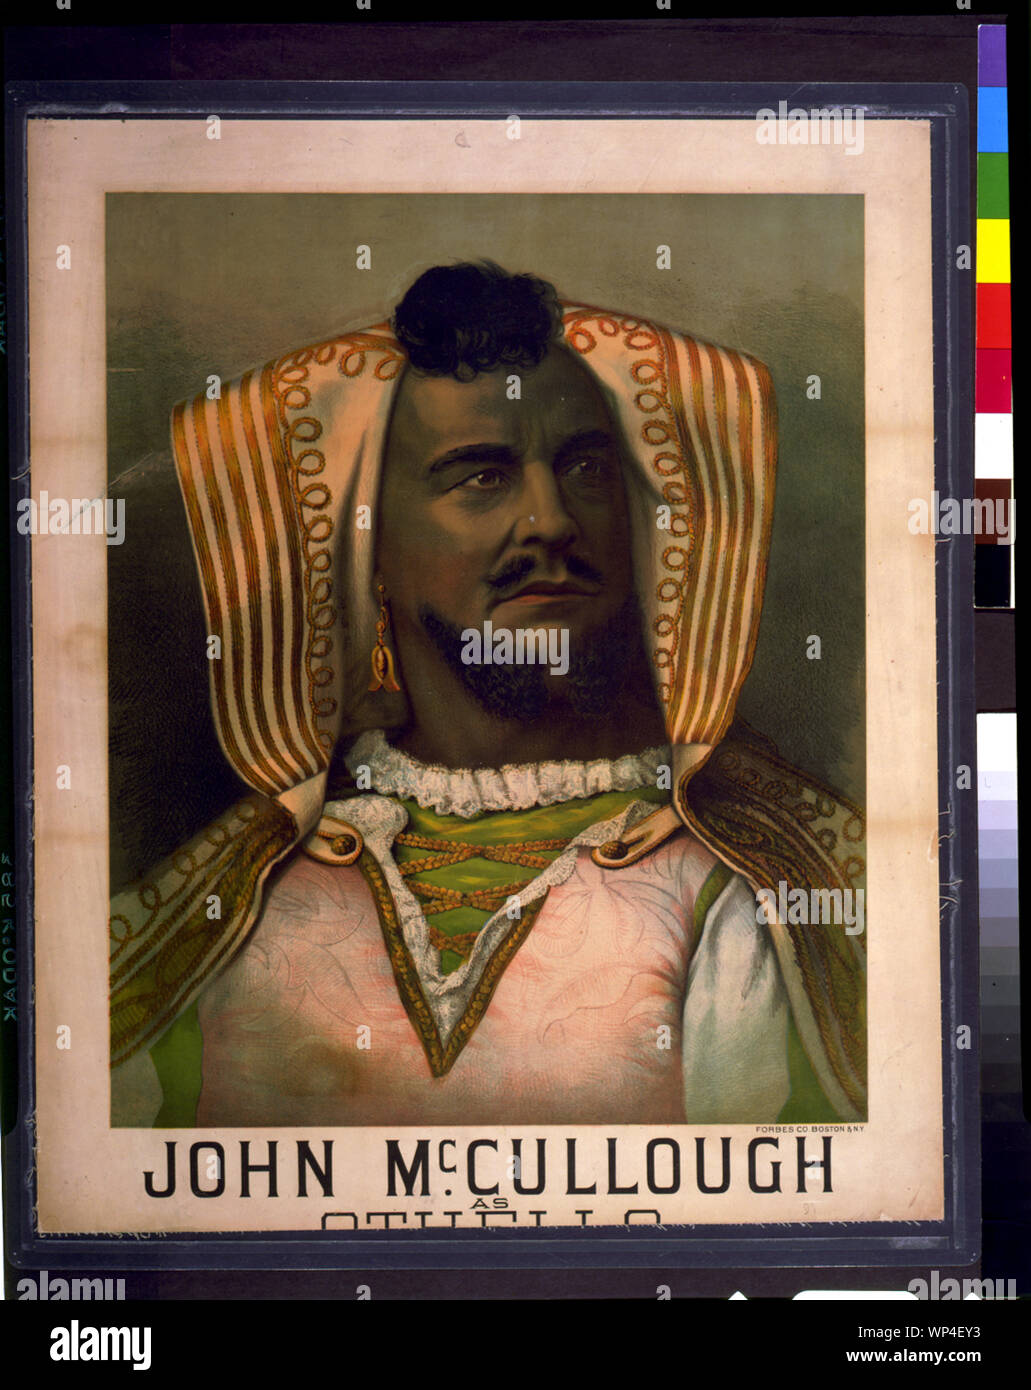 John McCullough as Othello Stock Photo